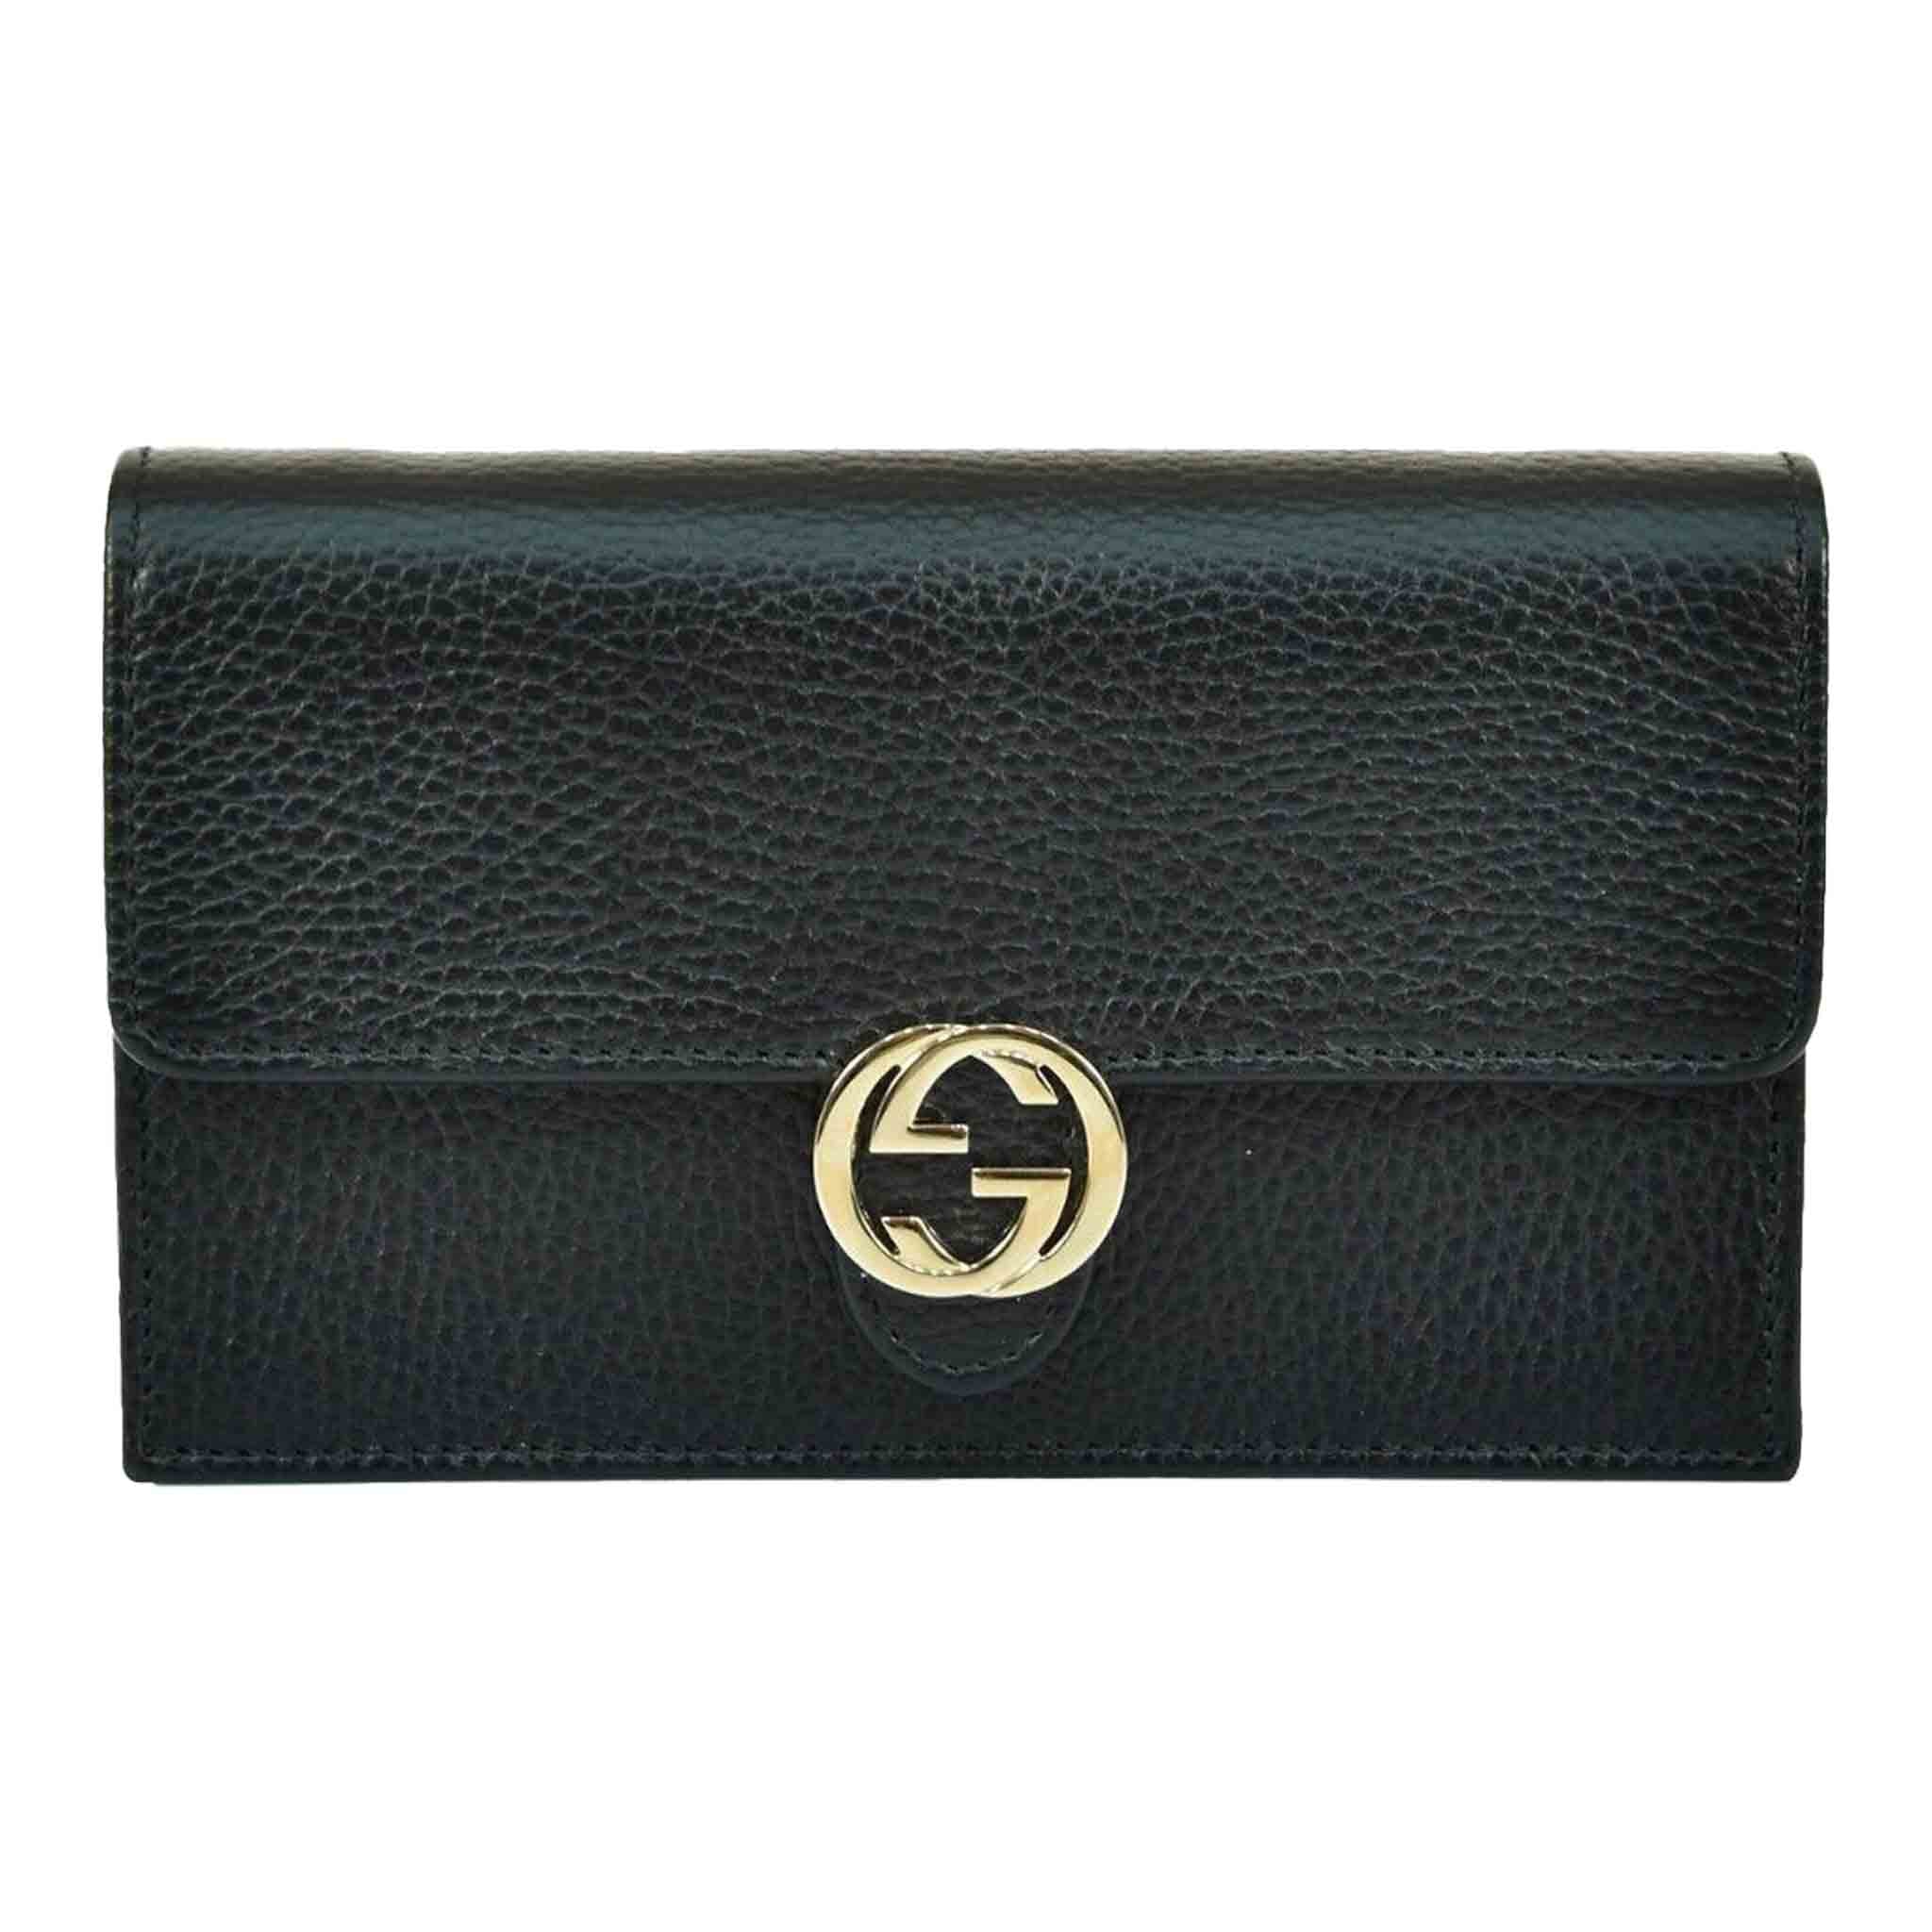 Gucci Logo Interlocking Calf Leather Small Bag in Black